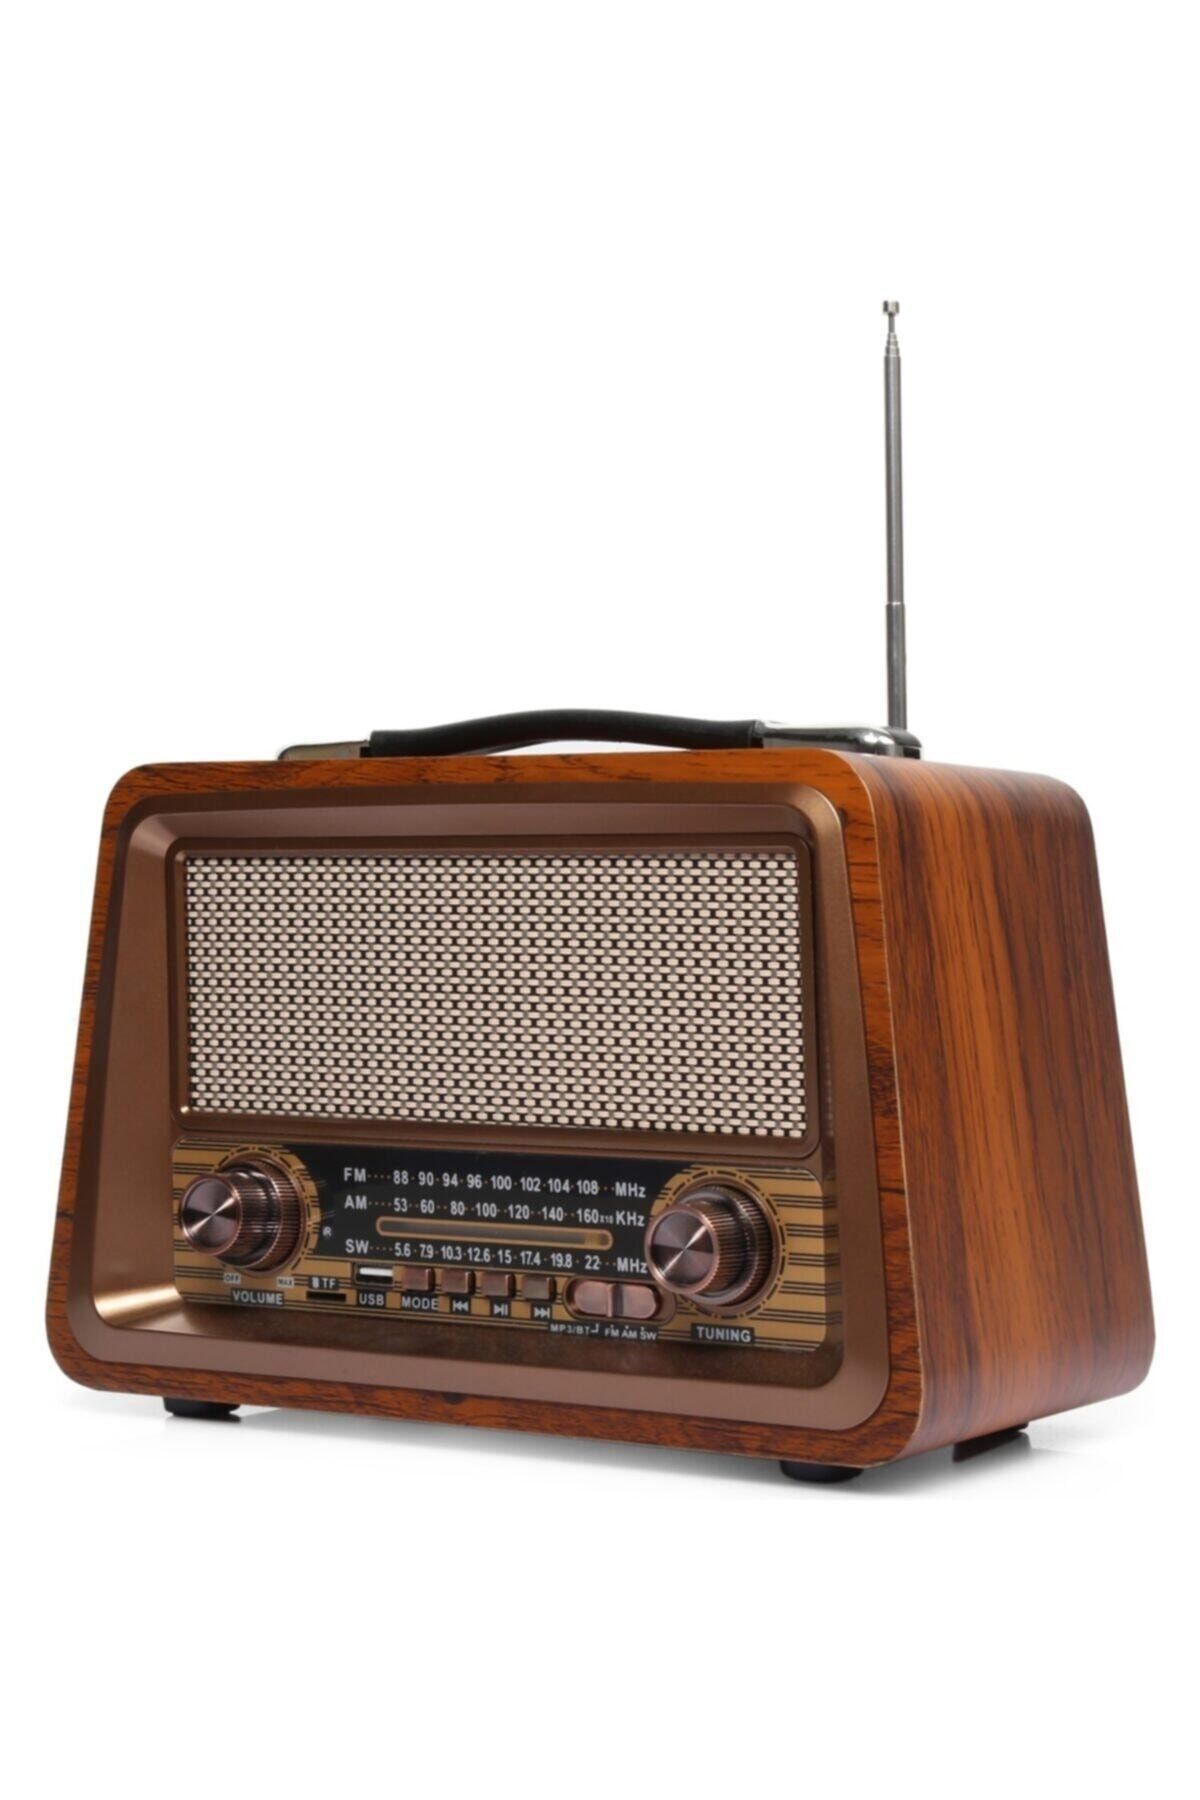 BAYINDIRELEKTRONİK Nostaljik Radyo Gerçek Ahşap Eskitme Bluetooth Hoparlör Mp3 Çalar Müzik Kutusu